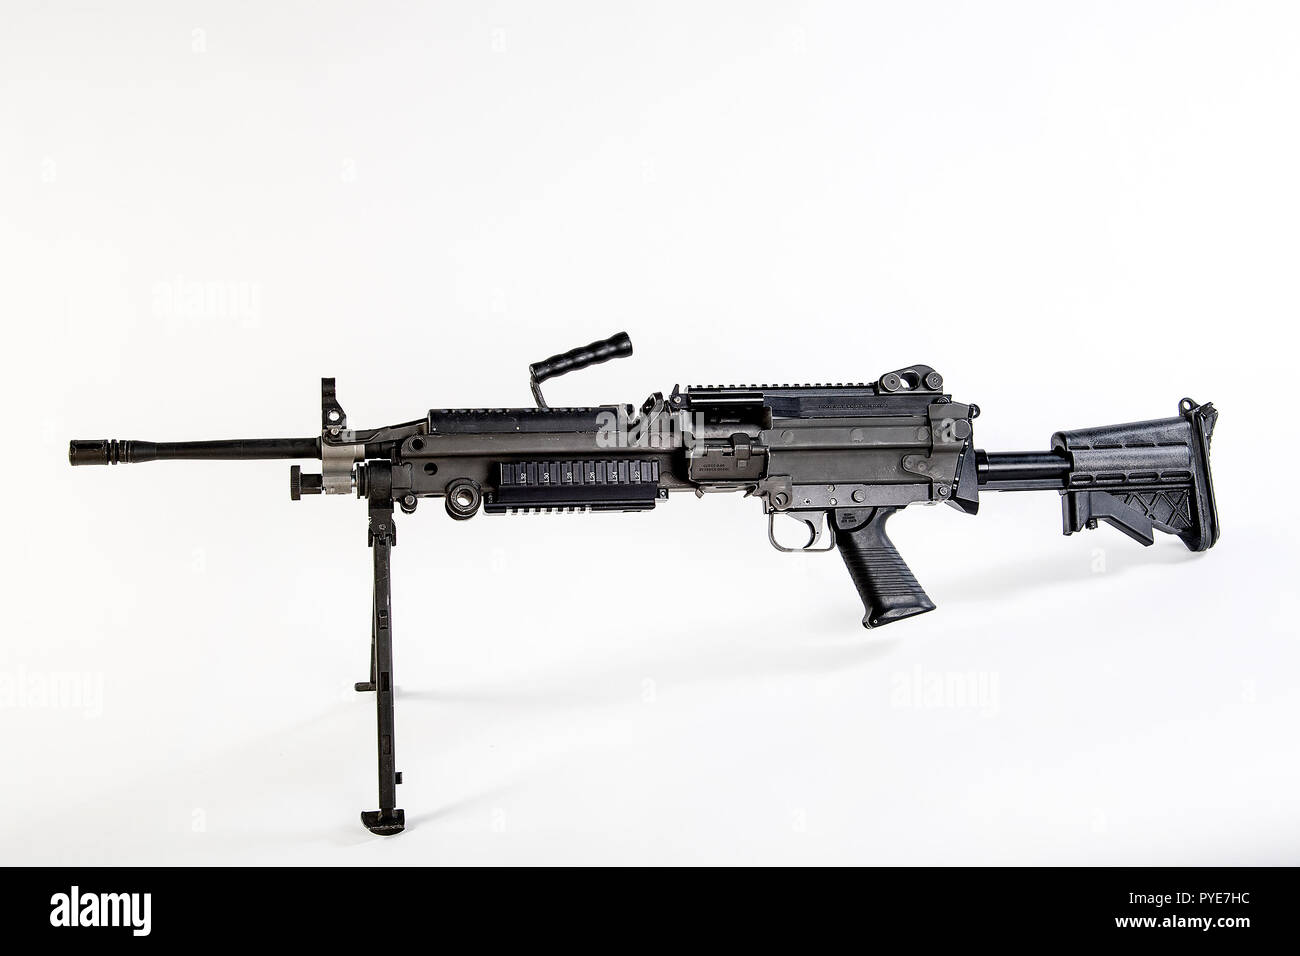 Il M249 Light machine gun, precedentemente indicato la M249 Squad Arma automatica (SAW) e formalmente scritta come macchina leggera pistola, 5,56 mm, M249, è l'adattamento americano del belga FN minimi, una luce mitragliatrice fabbricati dalla società belga FN Herstal (FN). L'arma è stata introdotta nel 1984 dopo essere stato giudicato il più efficace di un certo numero di candidati armi per affrontare il problema della mancanza di potenza di fuoco automatico in piccole unità. Il M249 fornisce squadre di fanteria con un alto tasso di fuoco di una mitragliatrice combinato con la precisione e la portabilità che si avvicina a quella di un fucile. Il M249 è un gas o Foto Stock